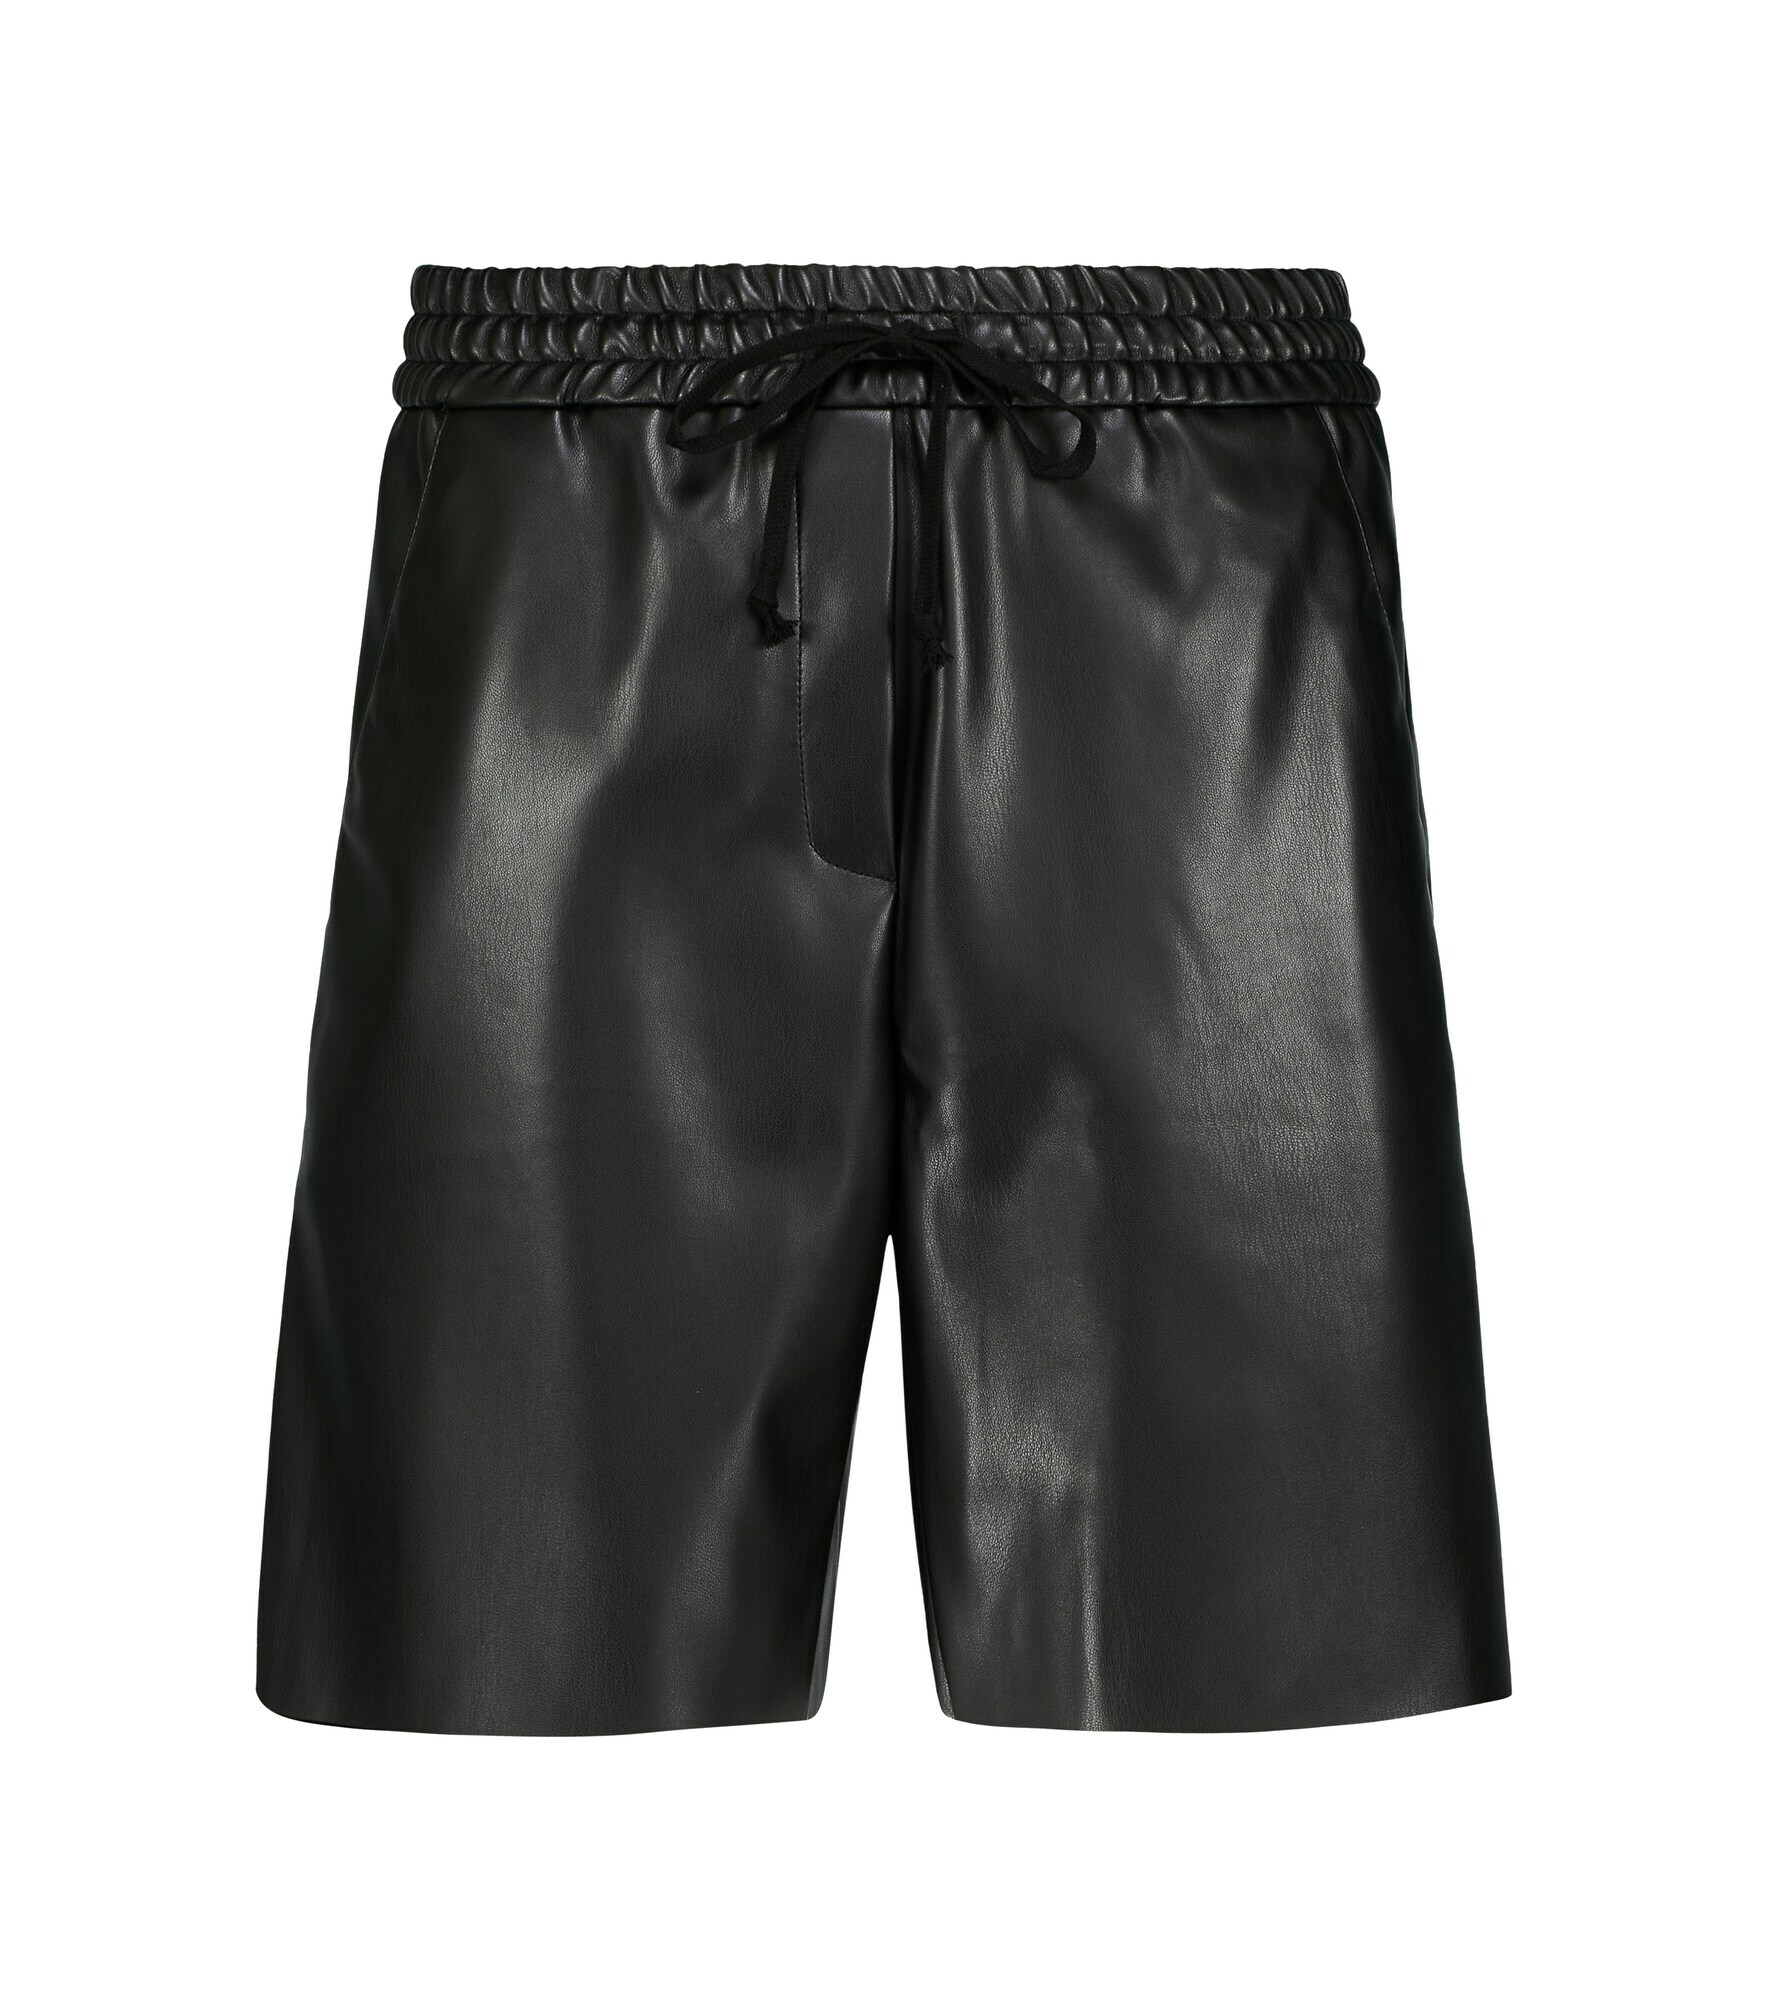 Deveaux New York - Brooke faux leather shorts Deveaux New York